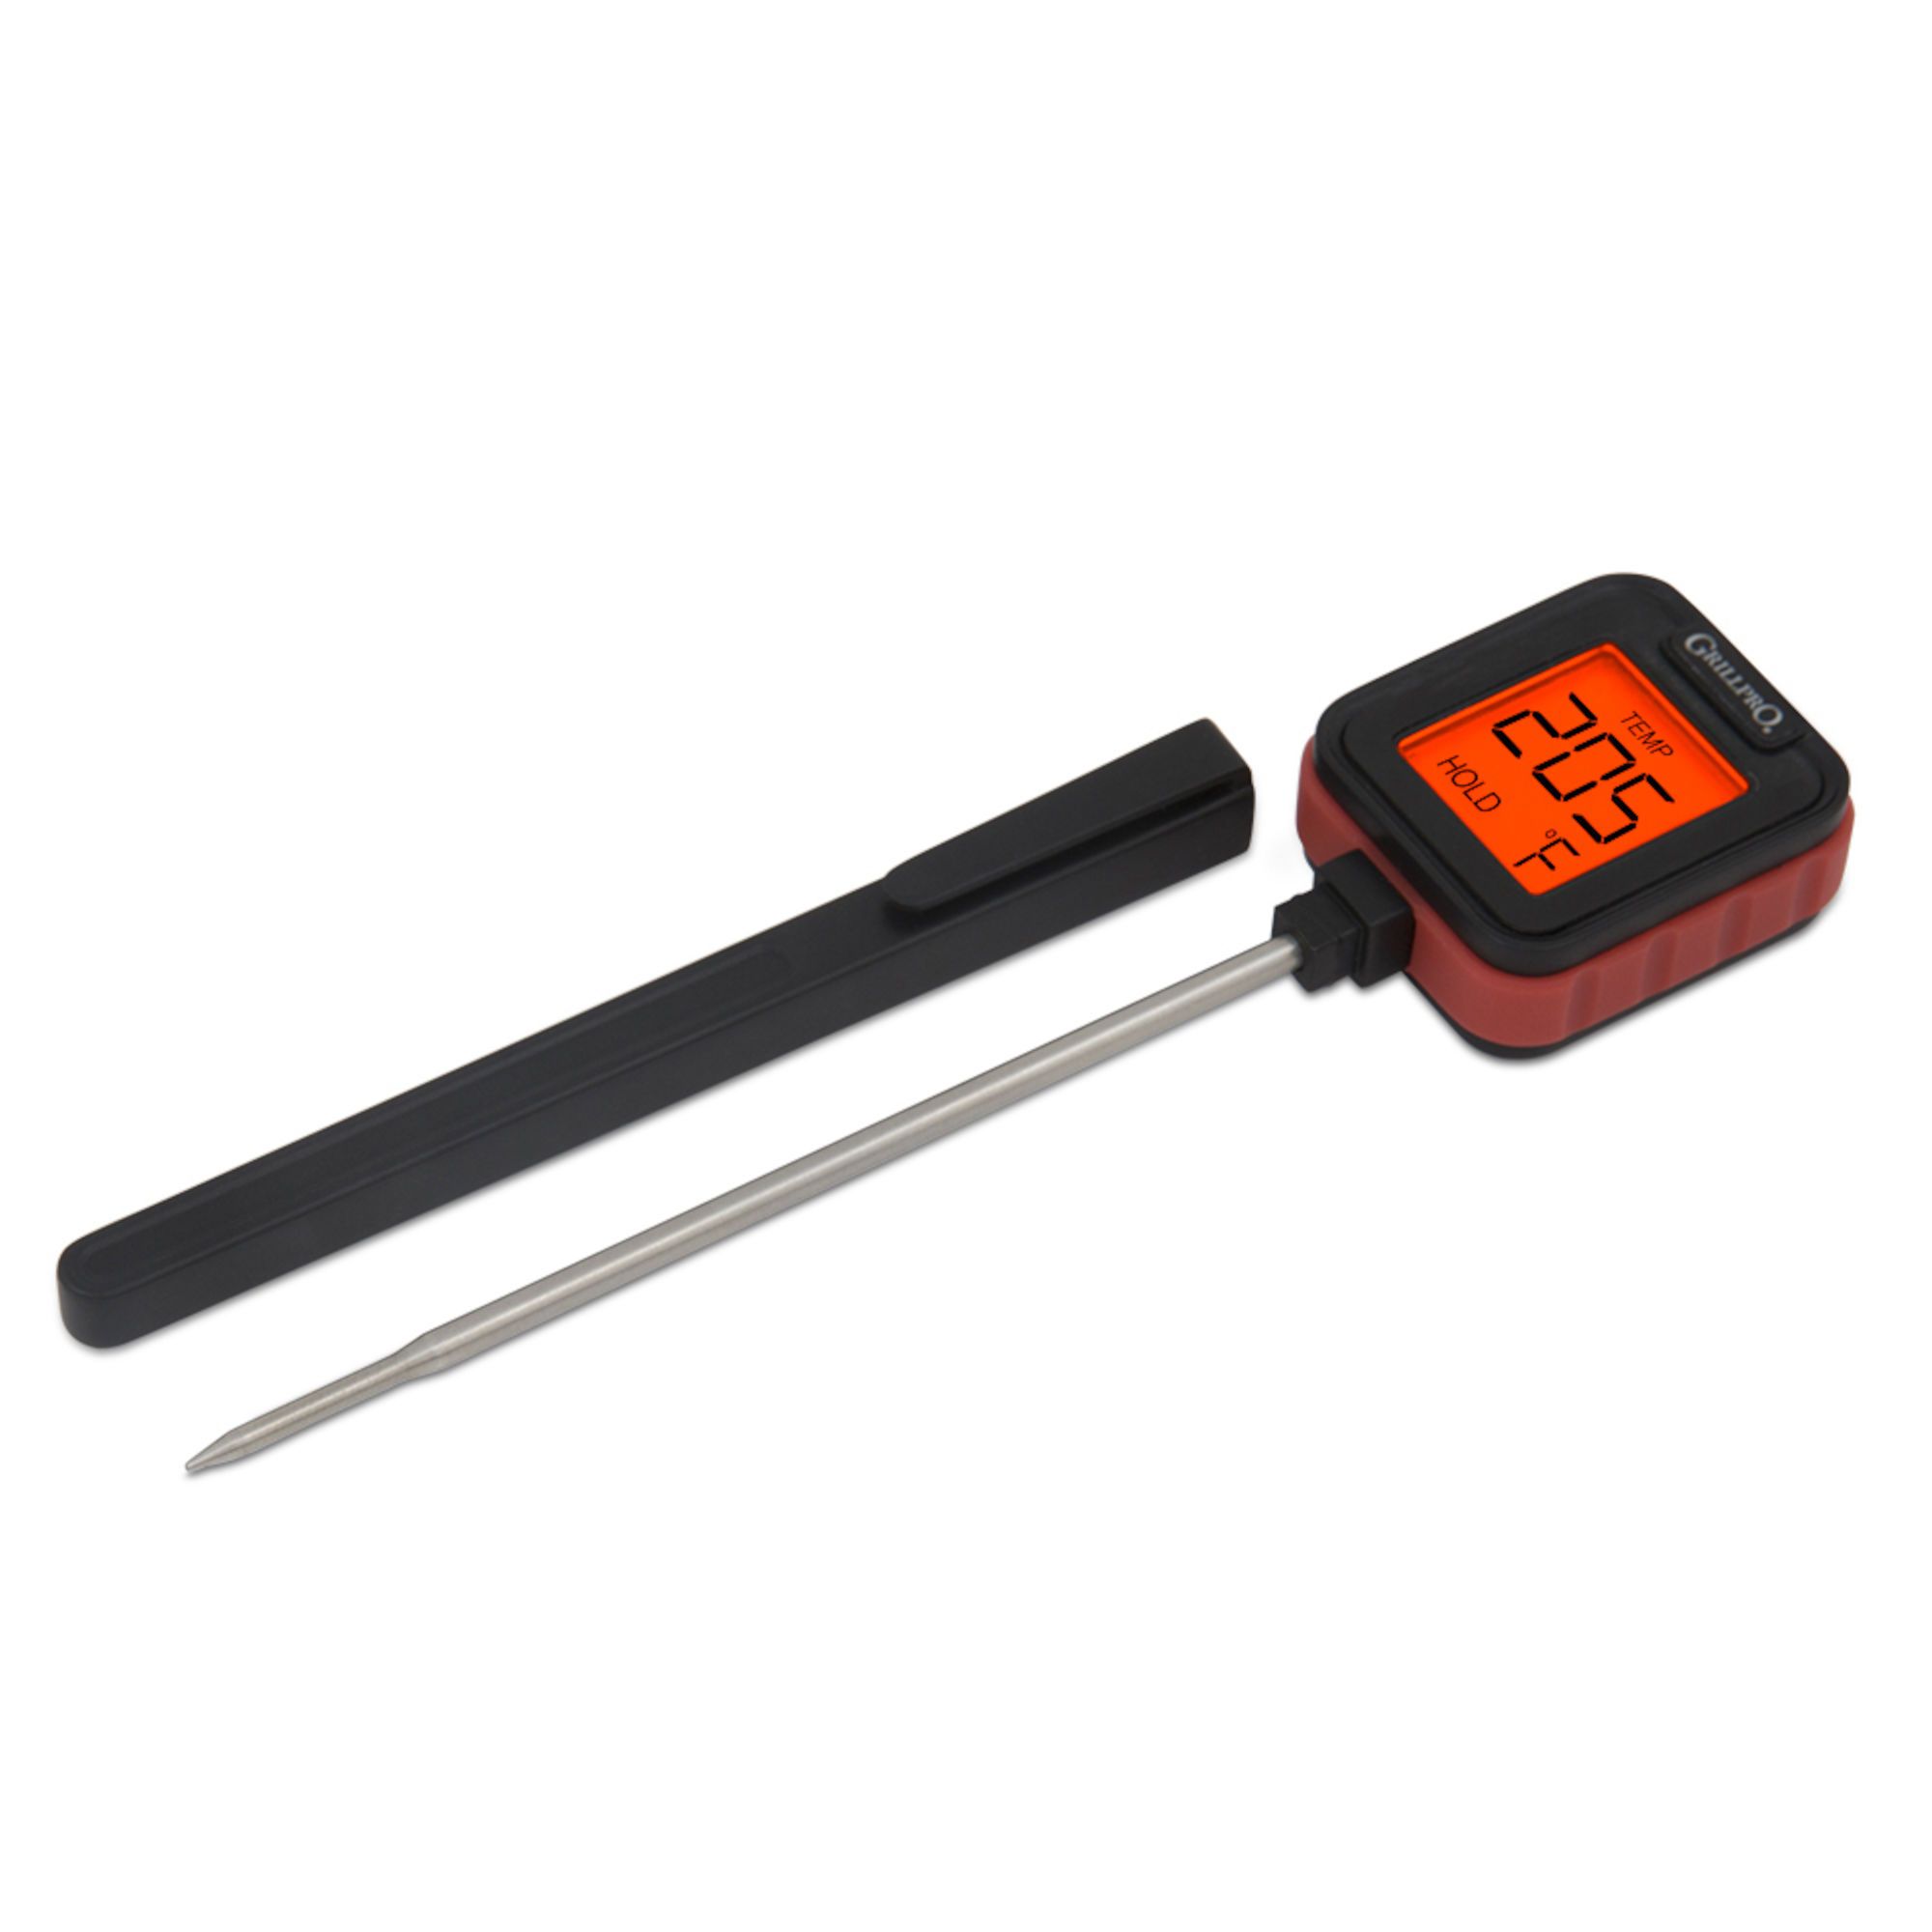 Thermomètre à viande numérique de PIT BOSS